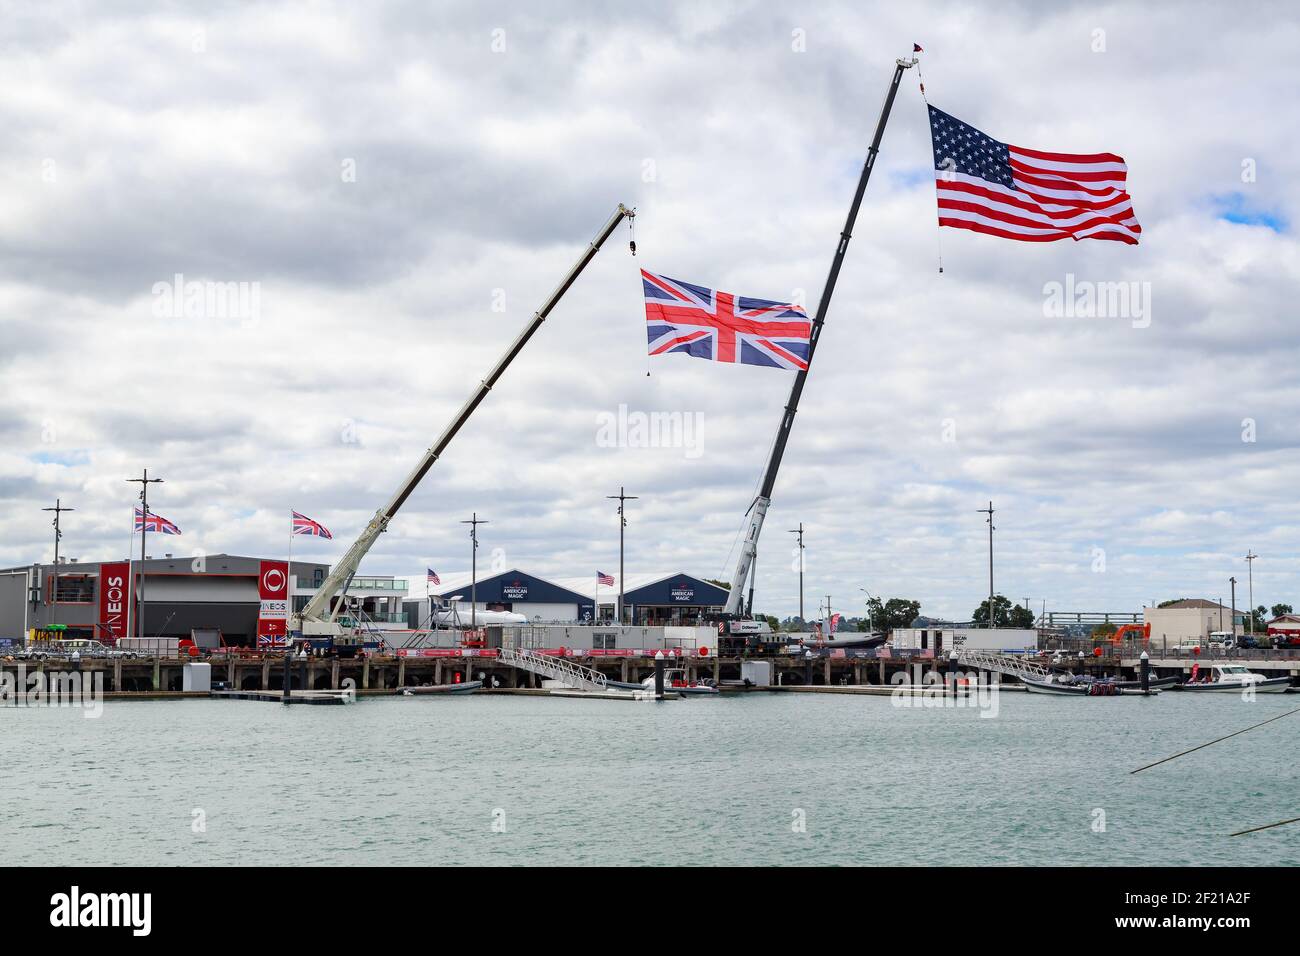 Drapeaux britanniques et américains géants volant aux bases de magie américaine et britannique Ineos lors de la 36e course de yacht de la coupe de l'Amérique. Auckland, Nouvelle-Zélande Banque D'Images